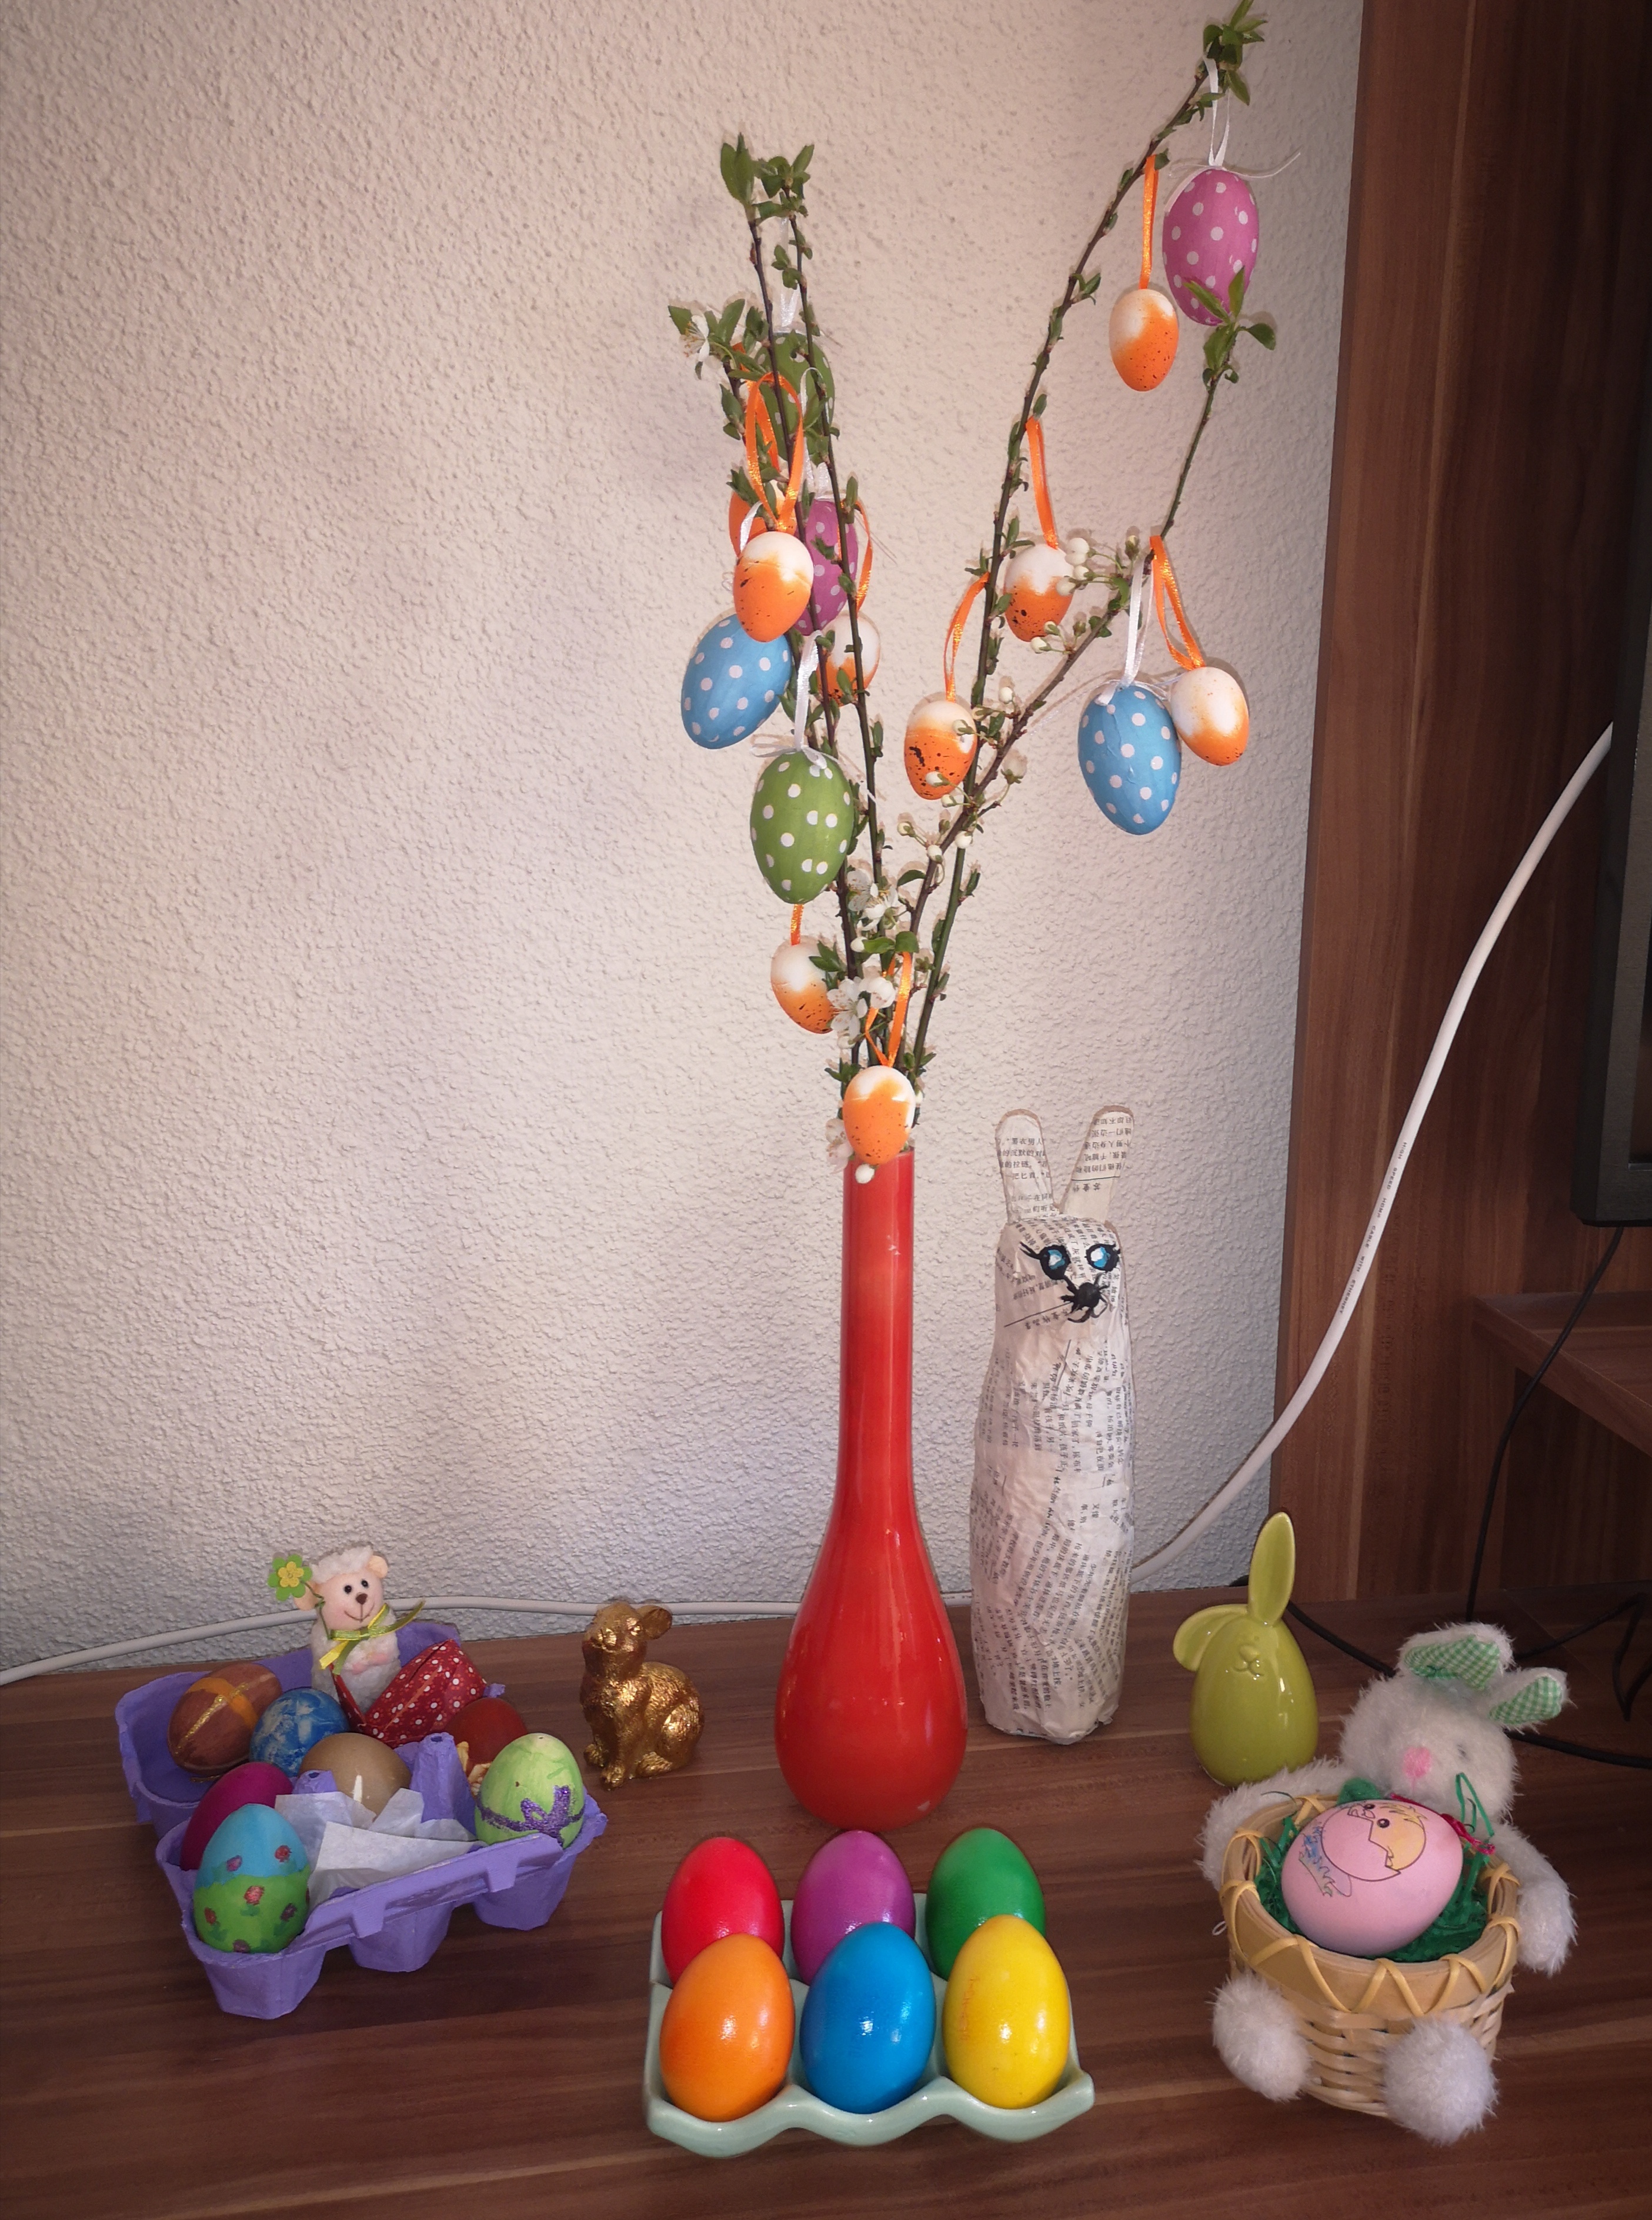 Mutasd nálad milyen színek kerültek az asztalra vagy a húsvéti dekorációba!